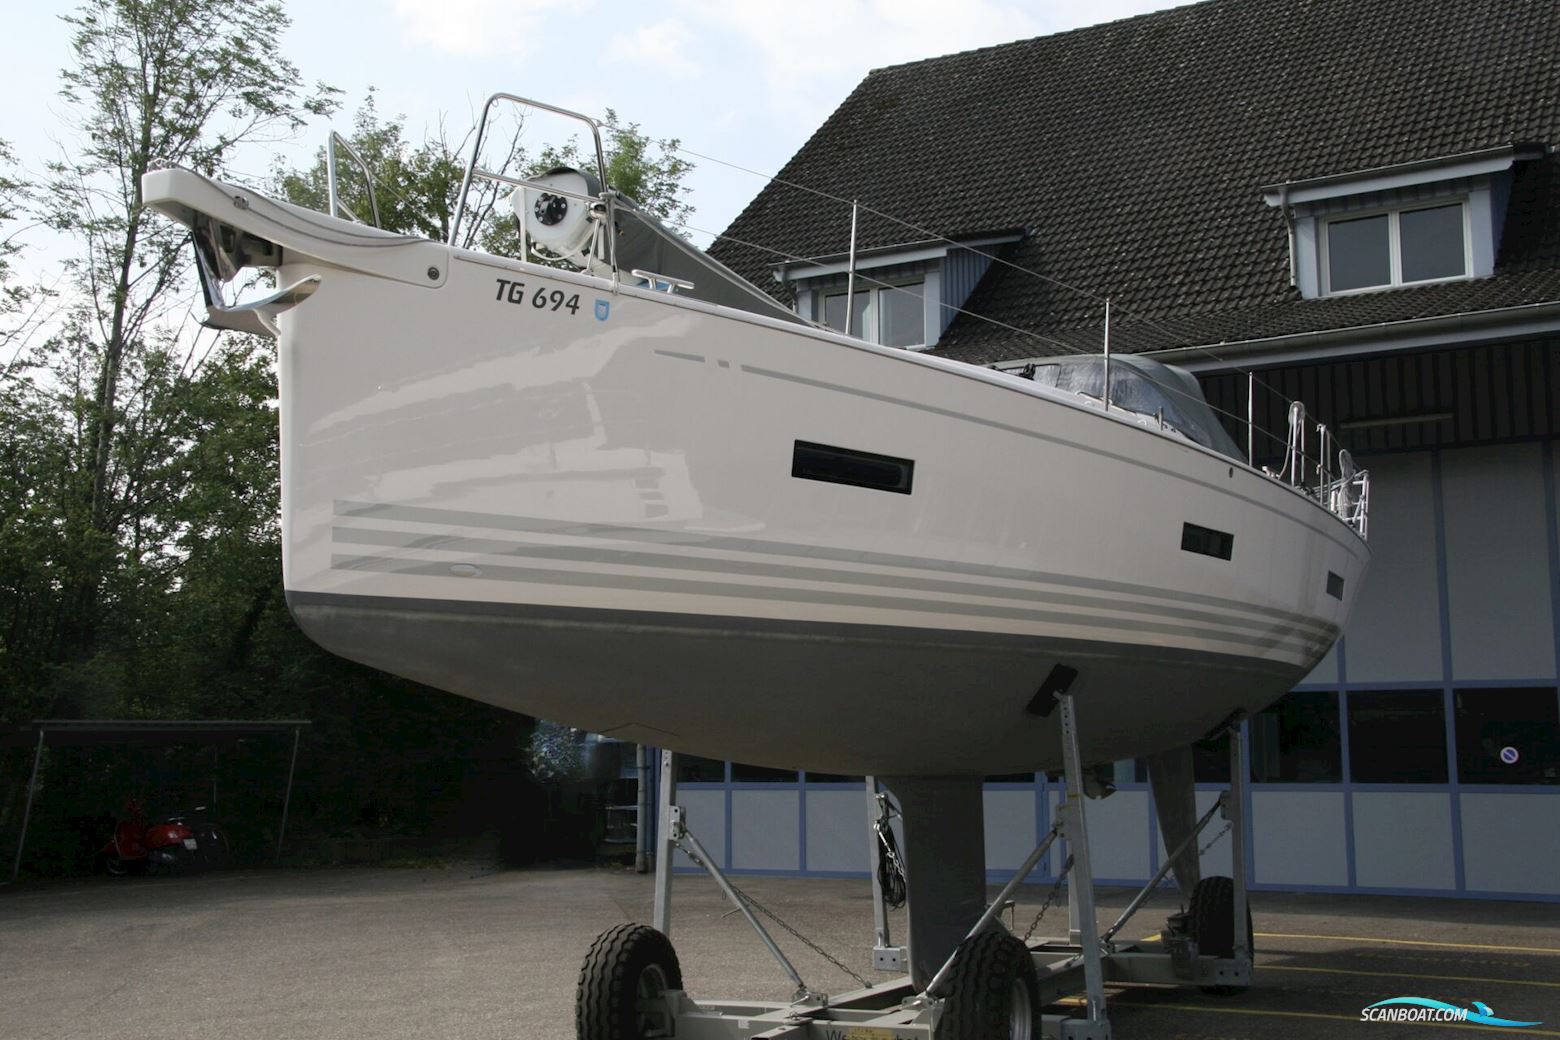 X4⁰ - X-Yachts Segelboot 2020, Schweiz